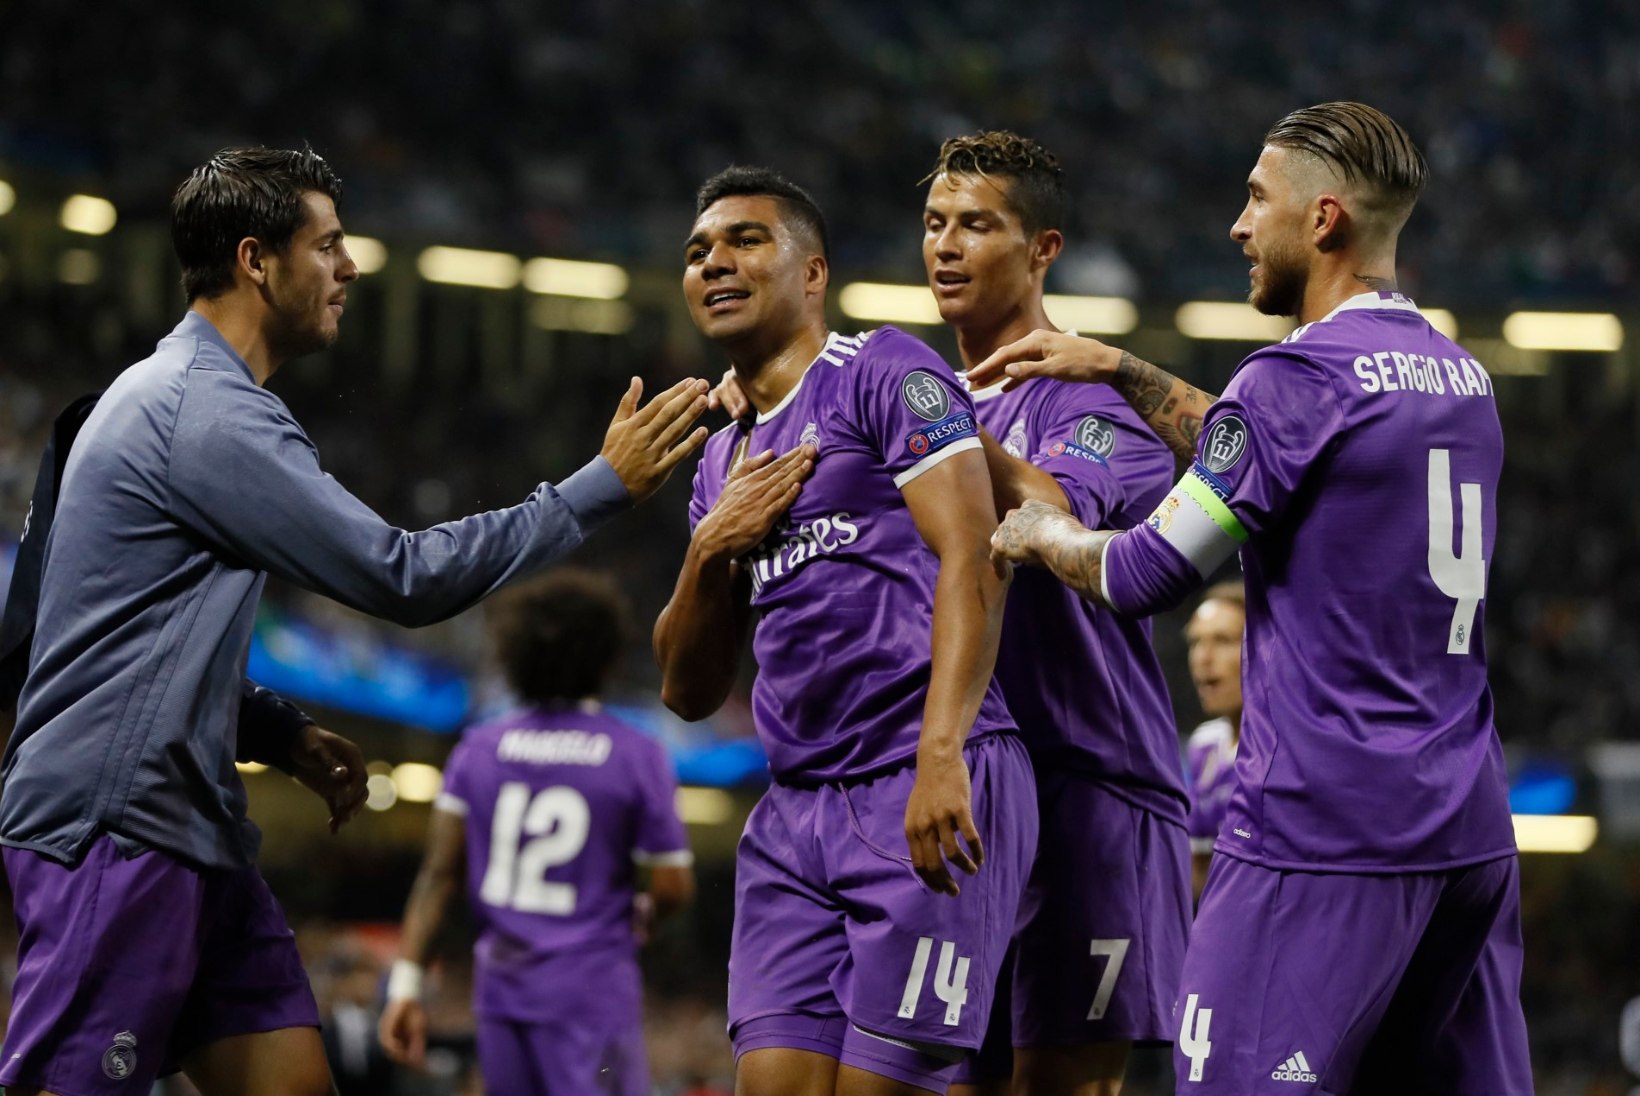 NII SEE JUHTUS | Sport 3.06: Madridi rõõm ja Juventuse kurbus ehk Real alistas Meistrite liiga finaalis Juventuse